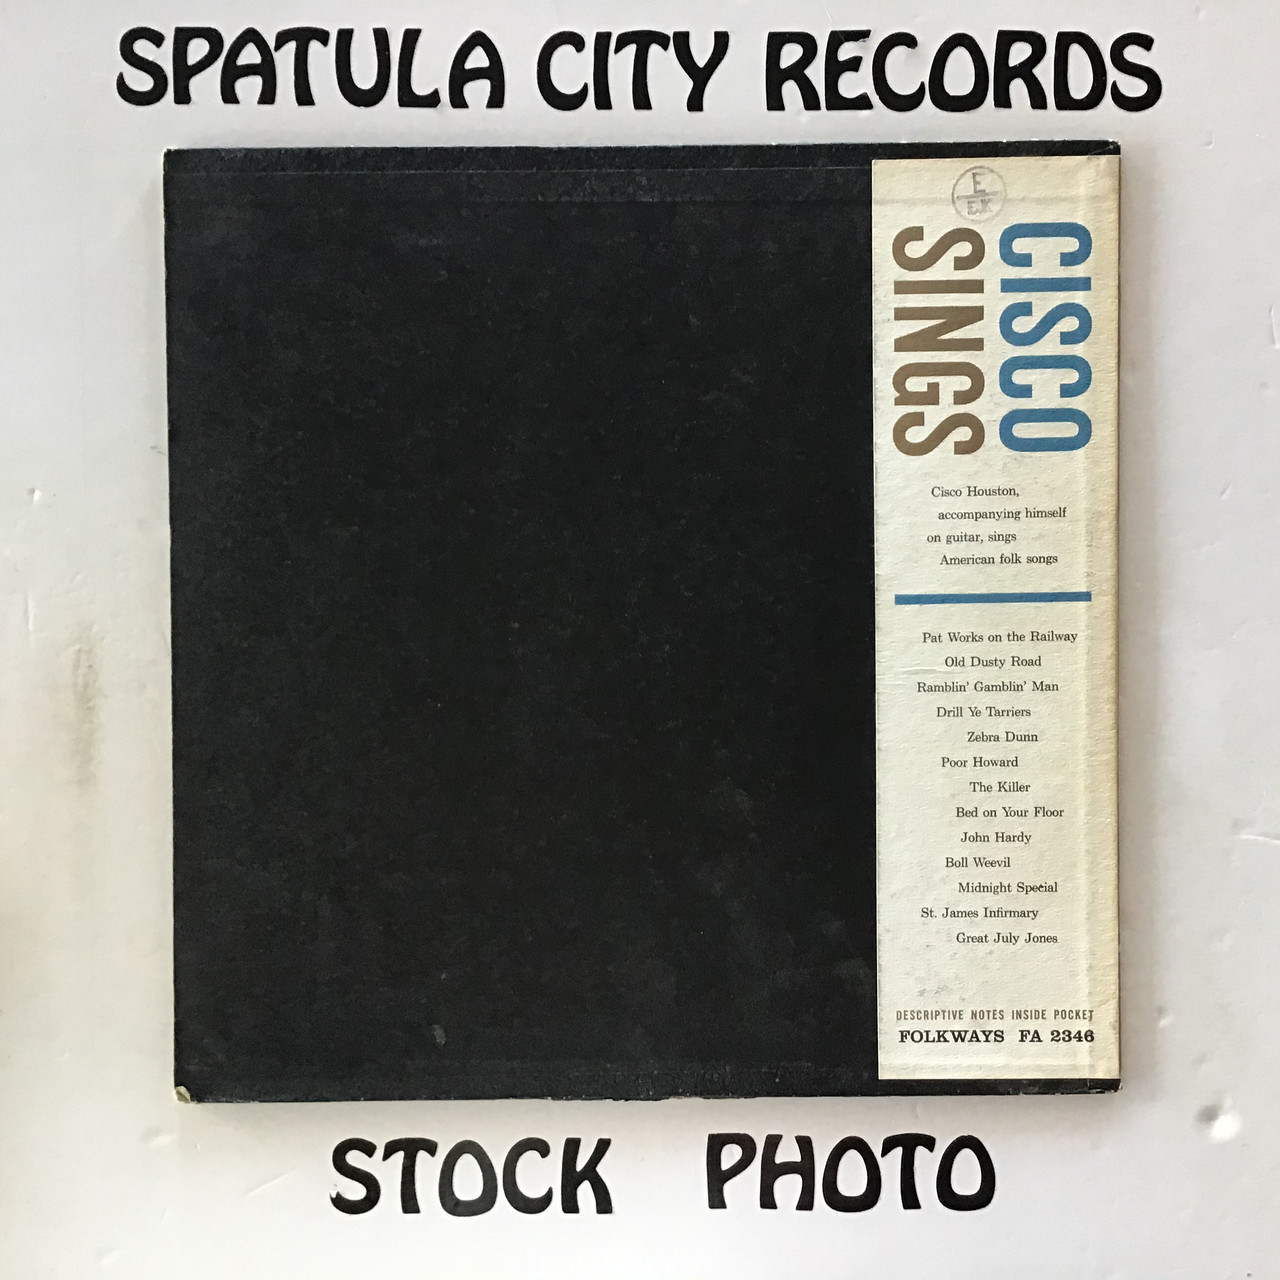 Cisco Houston - Cisco Sings - vinyl record LP